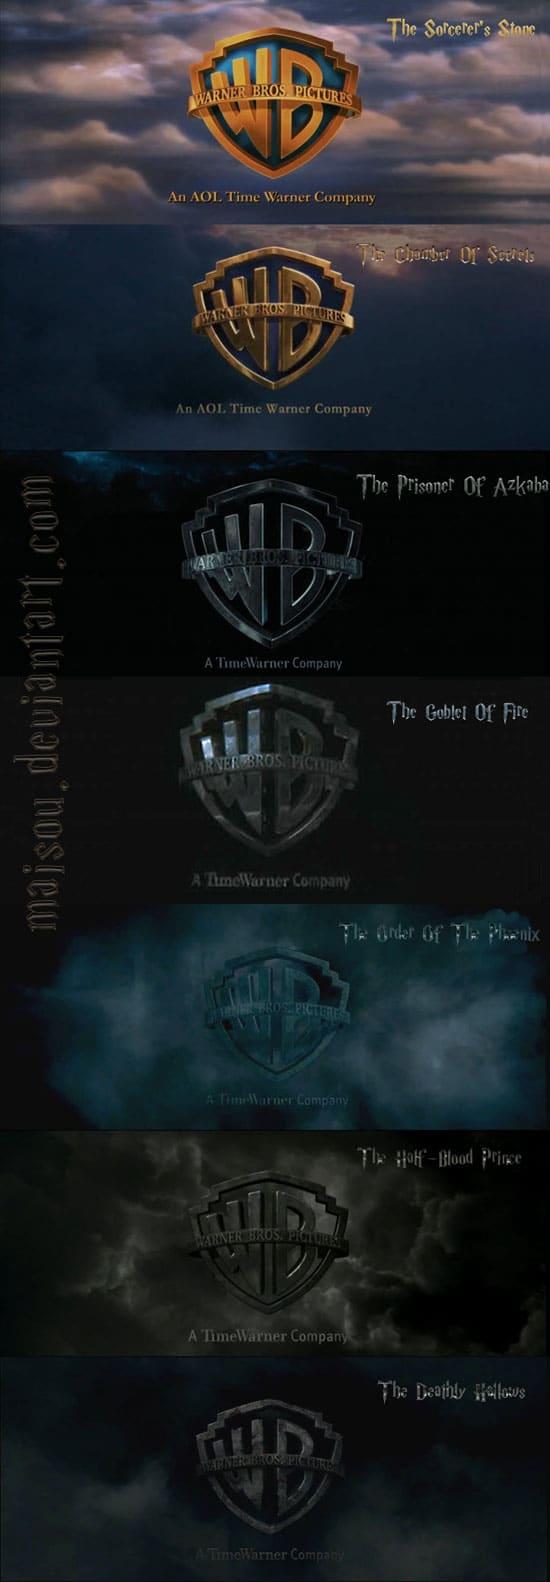 Harry Potter Warner Bros. Logo - Evolution Of Warner Bros. Logo In Harry Potter